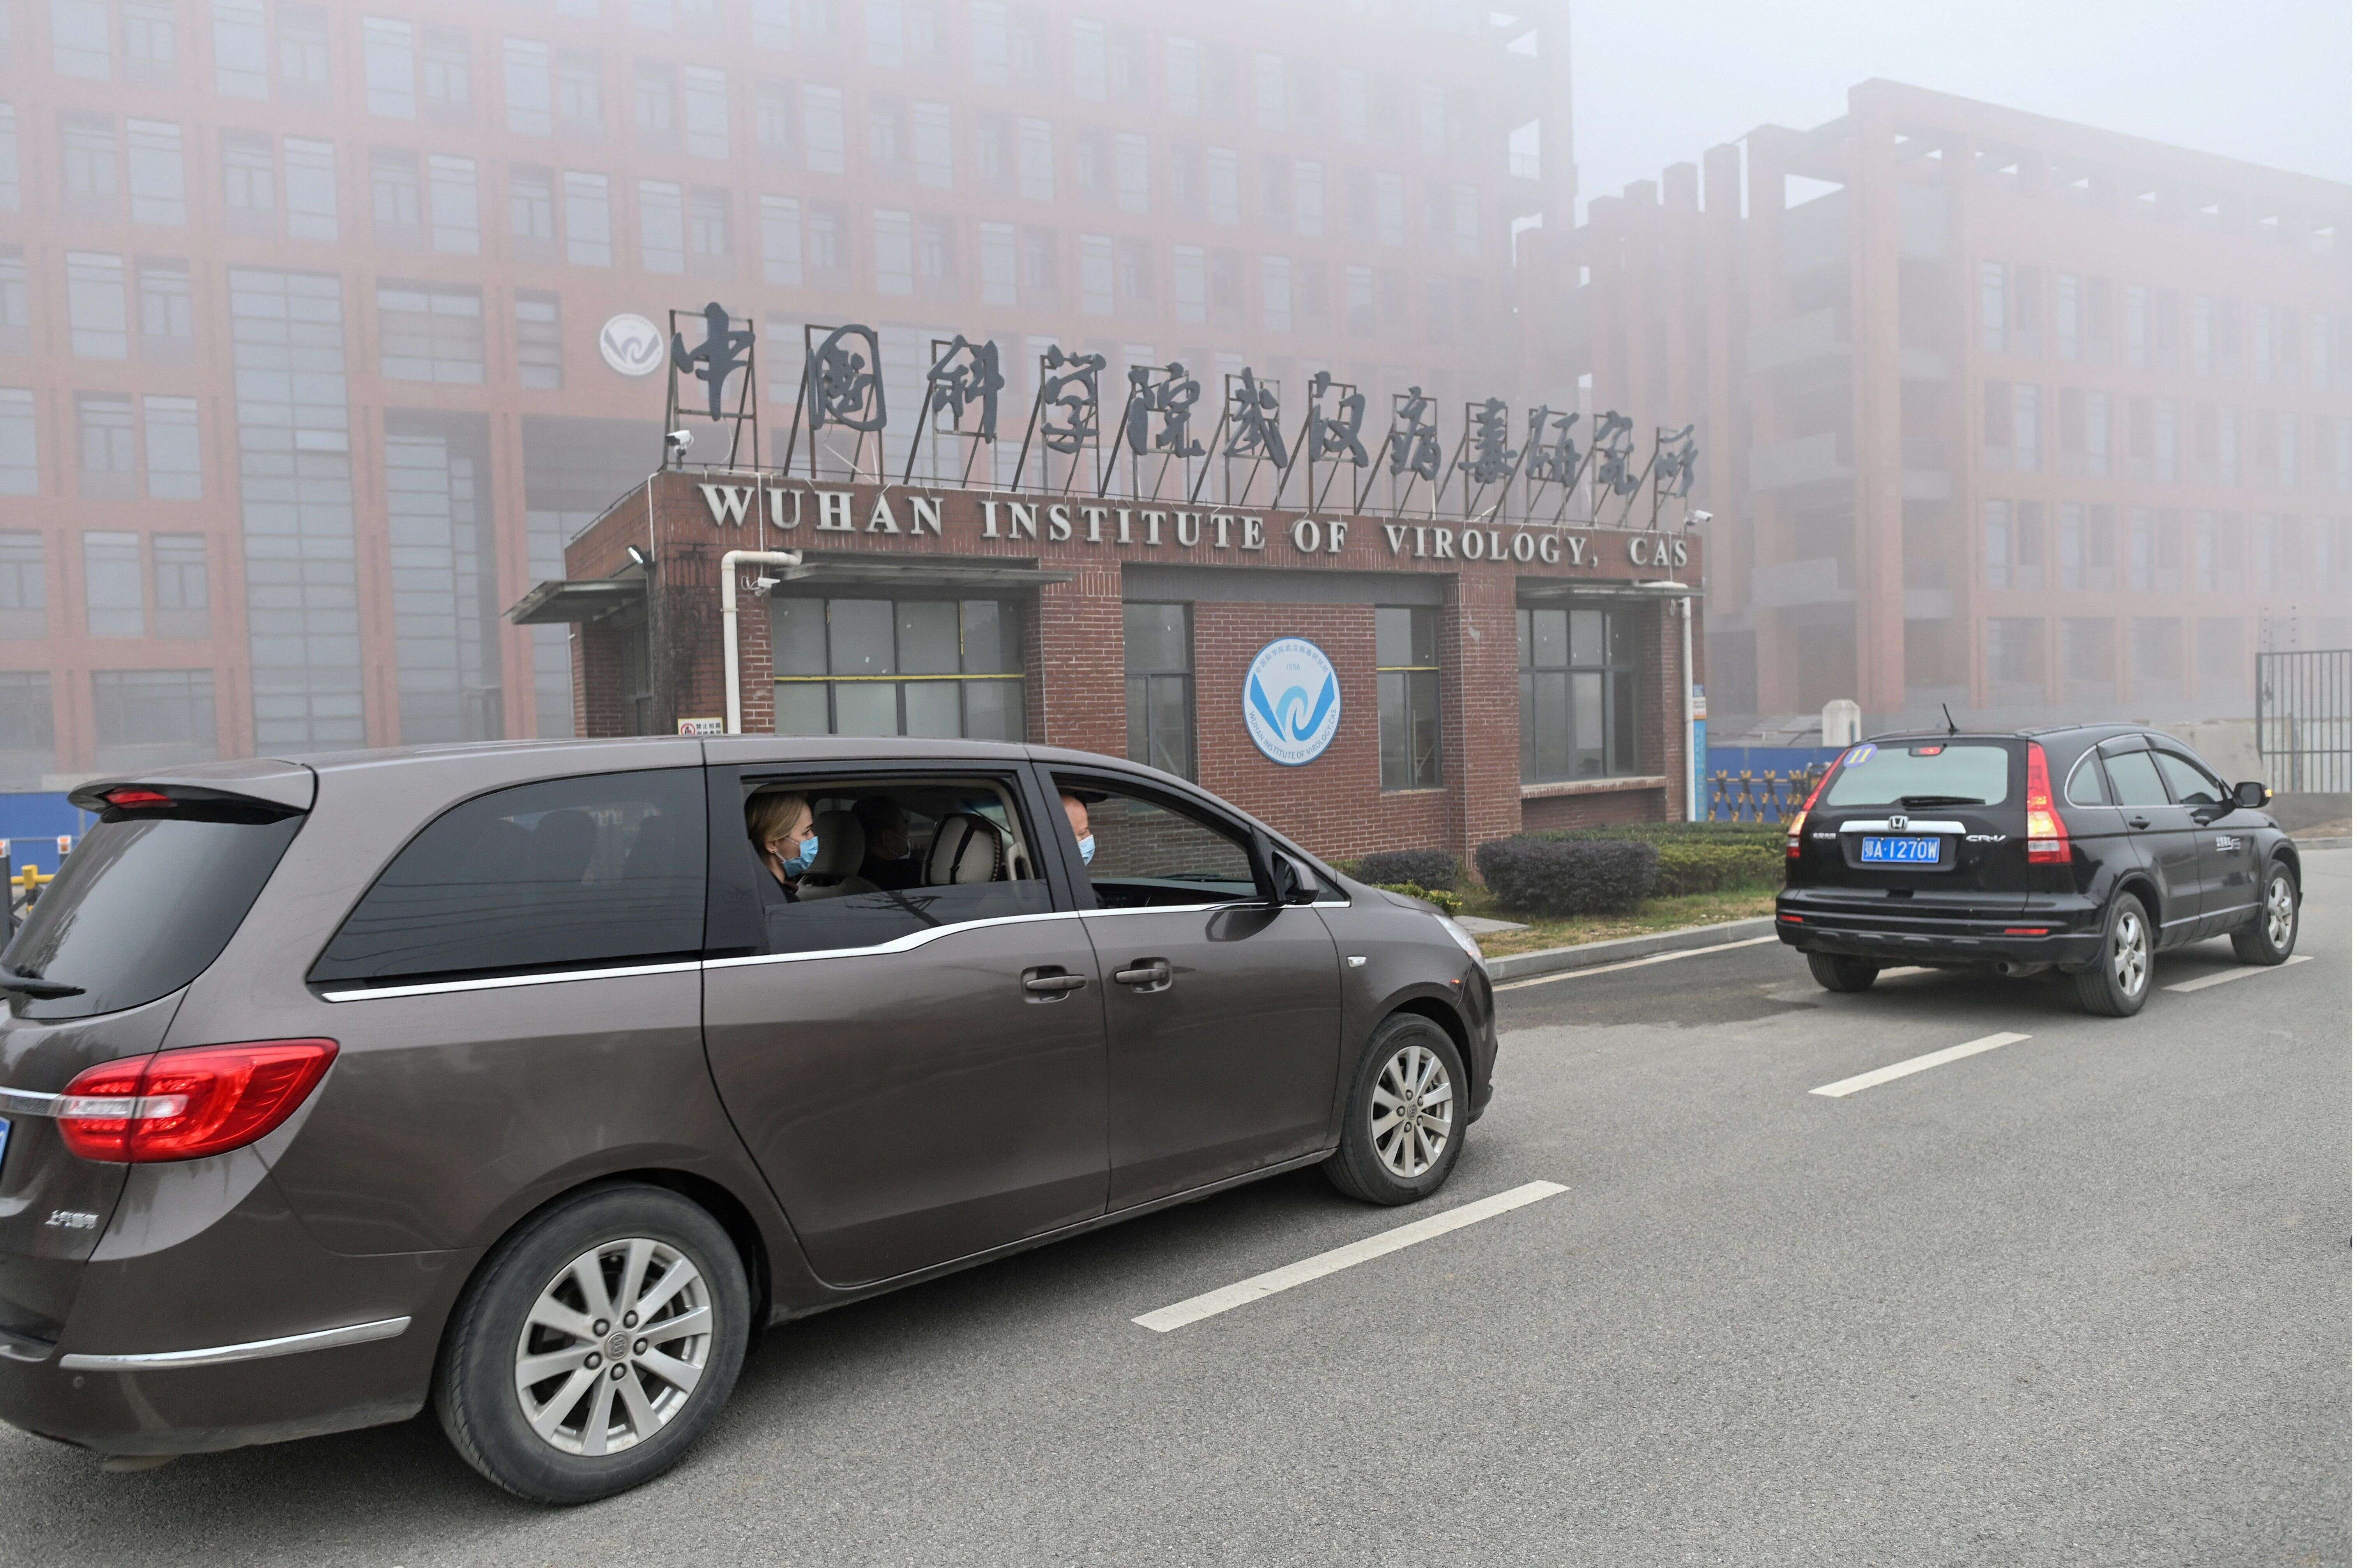 Le 3 février dernier, les experts de l'OMS avaient notamment visité l'institut de virologie de Wuhan, épicentre de la pandémie de covid-19.